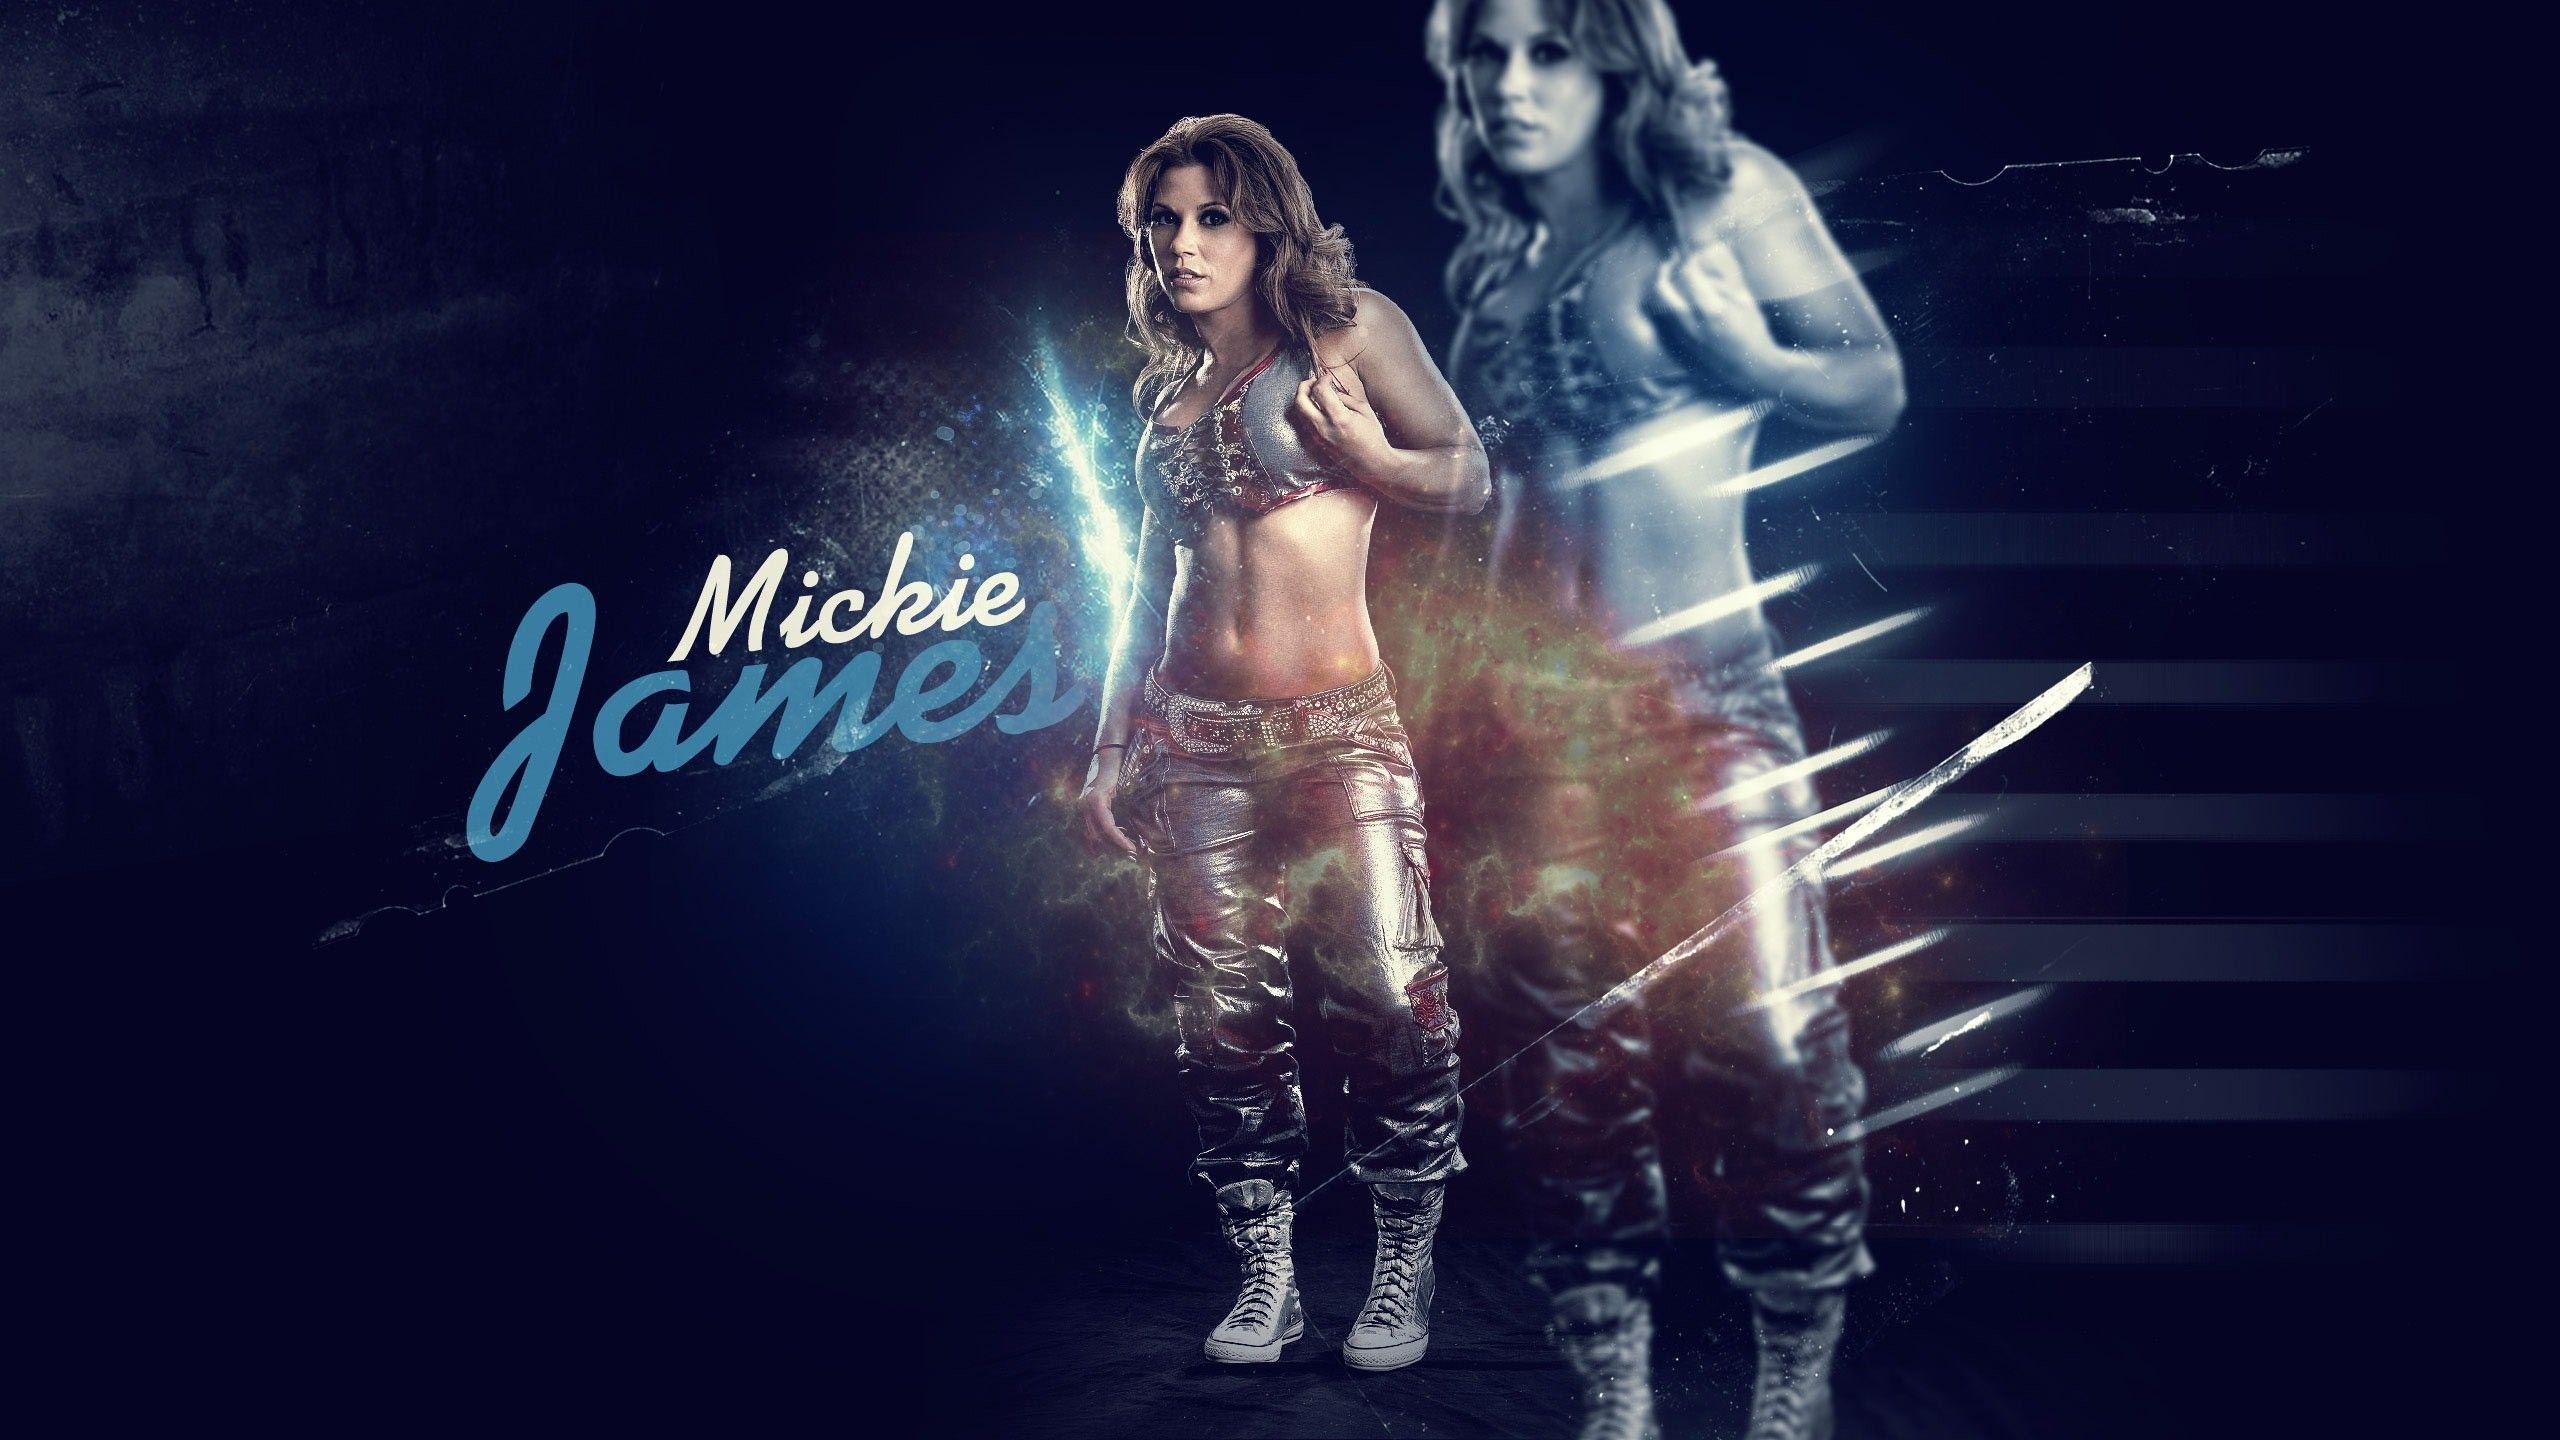 WWE Mickie James Image